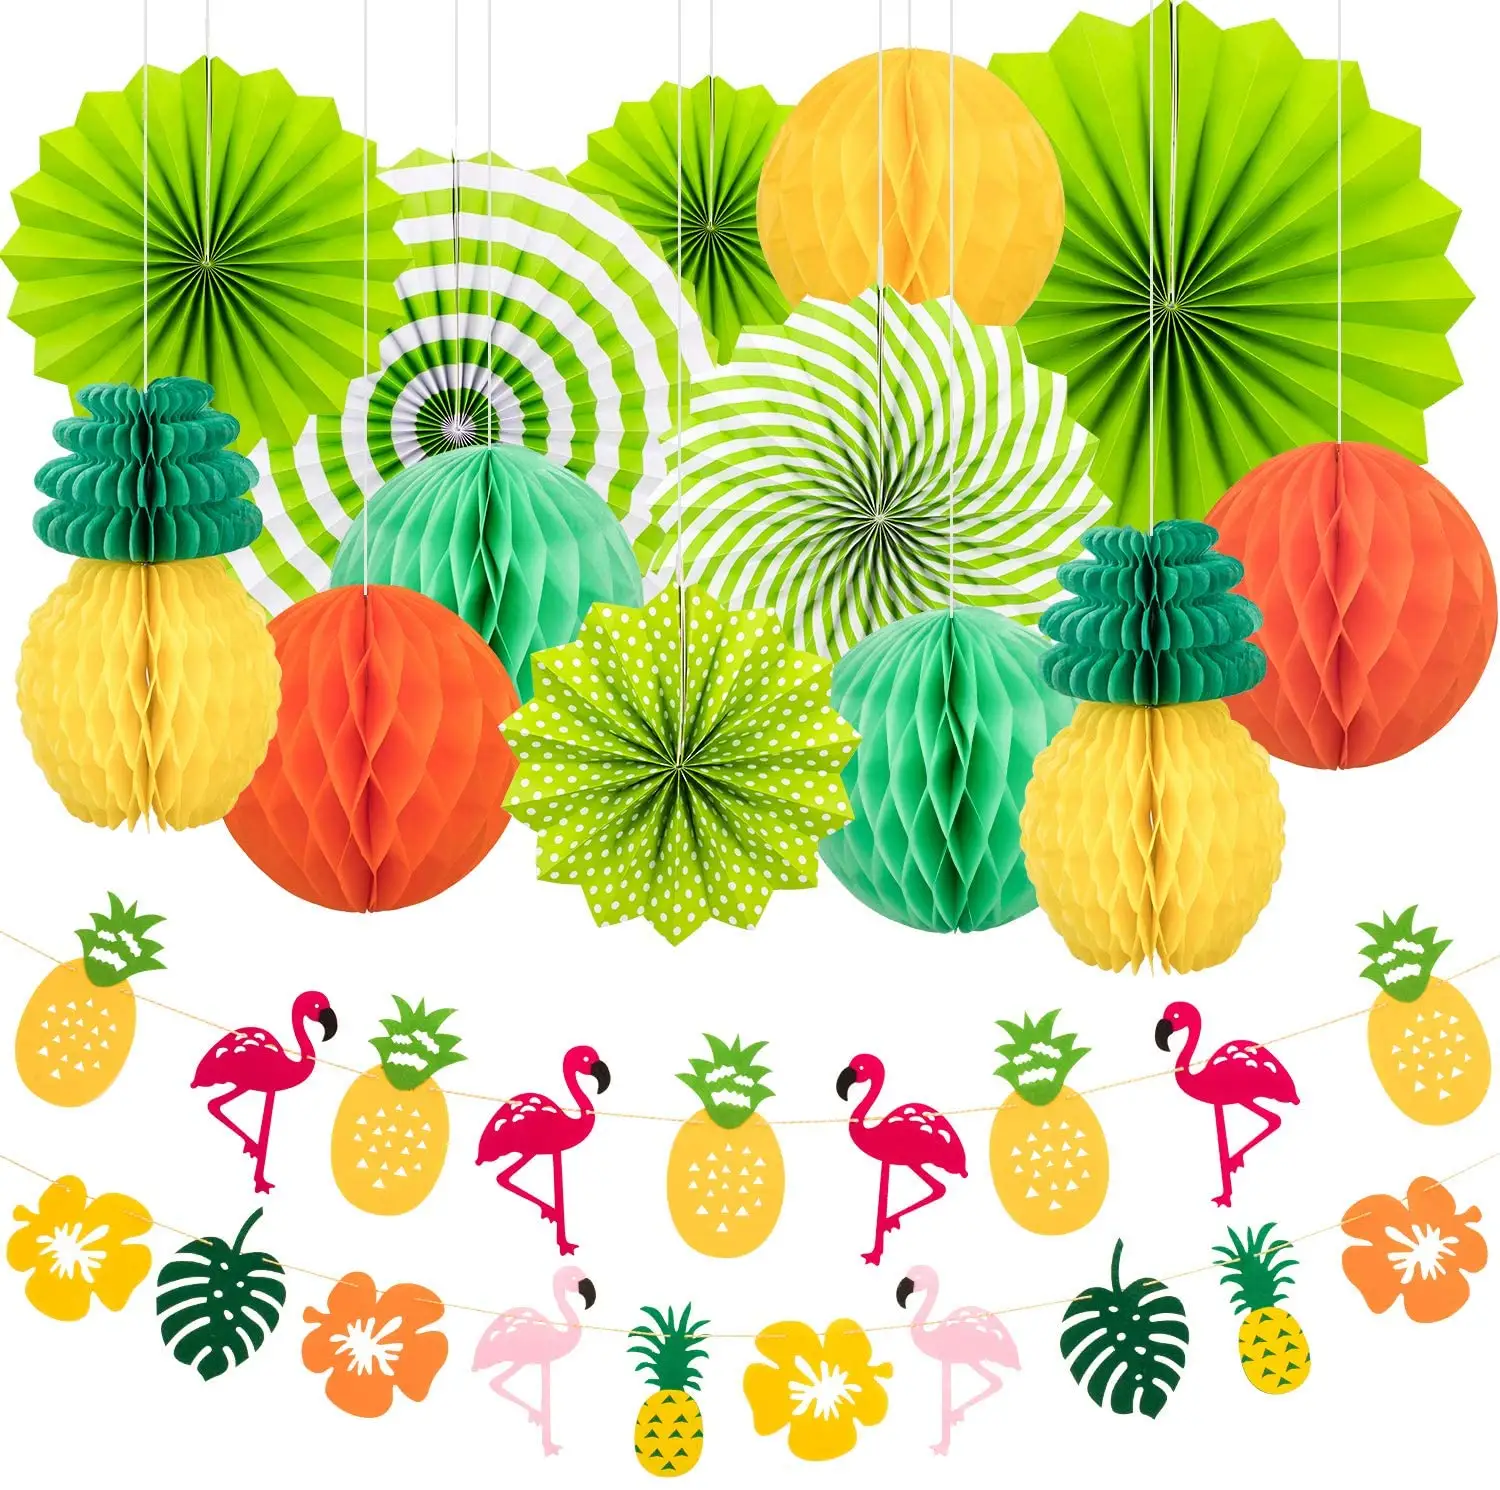 Лимон Гавайский подвесной бумажный веер ананас Фламинго цветок Гирлянда баннер Луау пляж день рождения фото фон товары для вечеринки